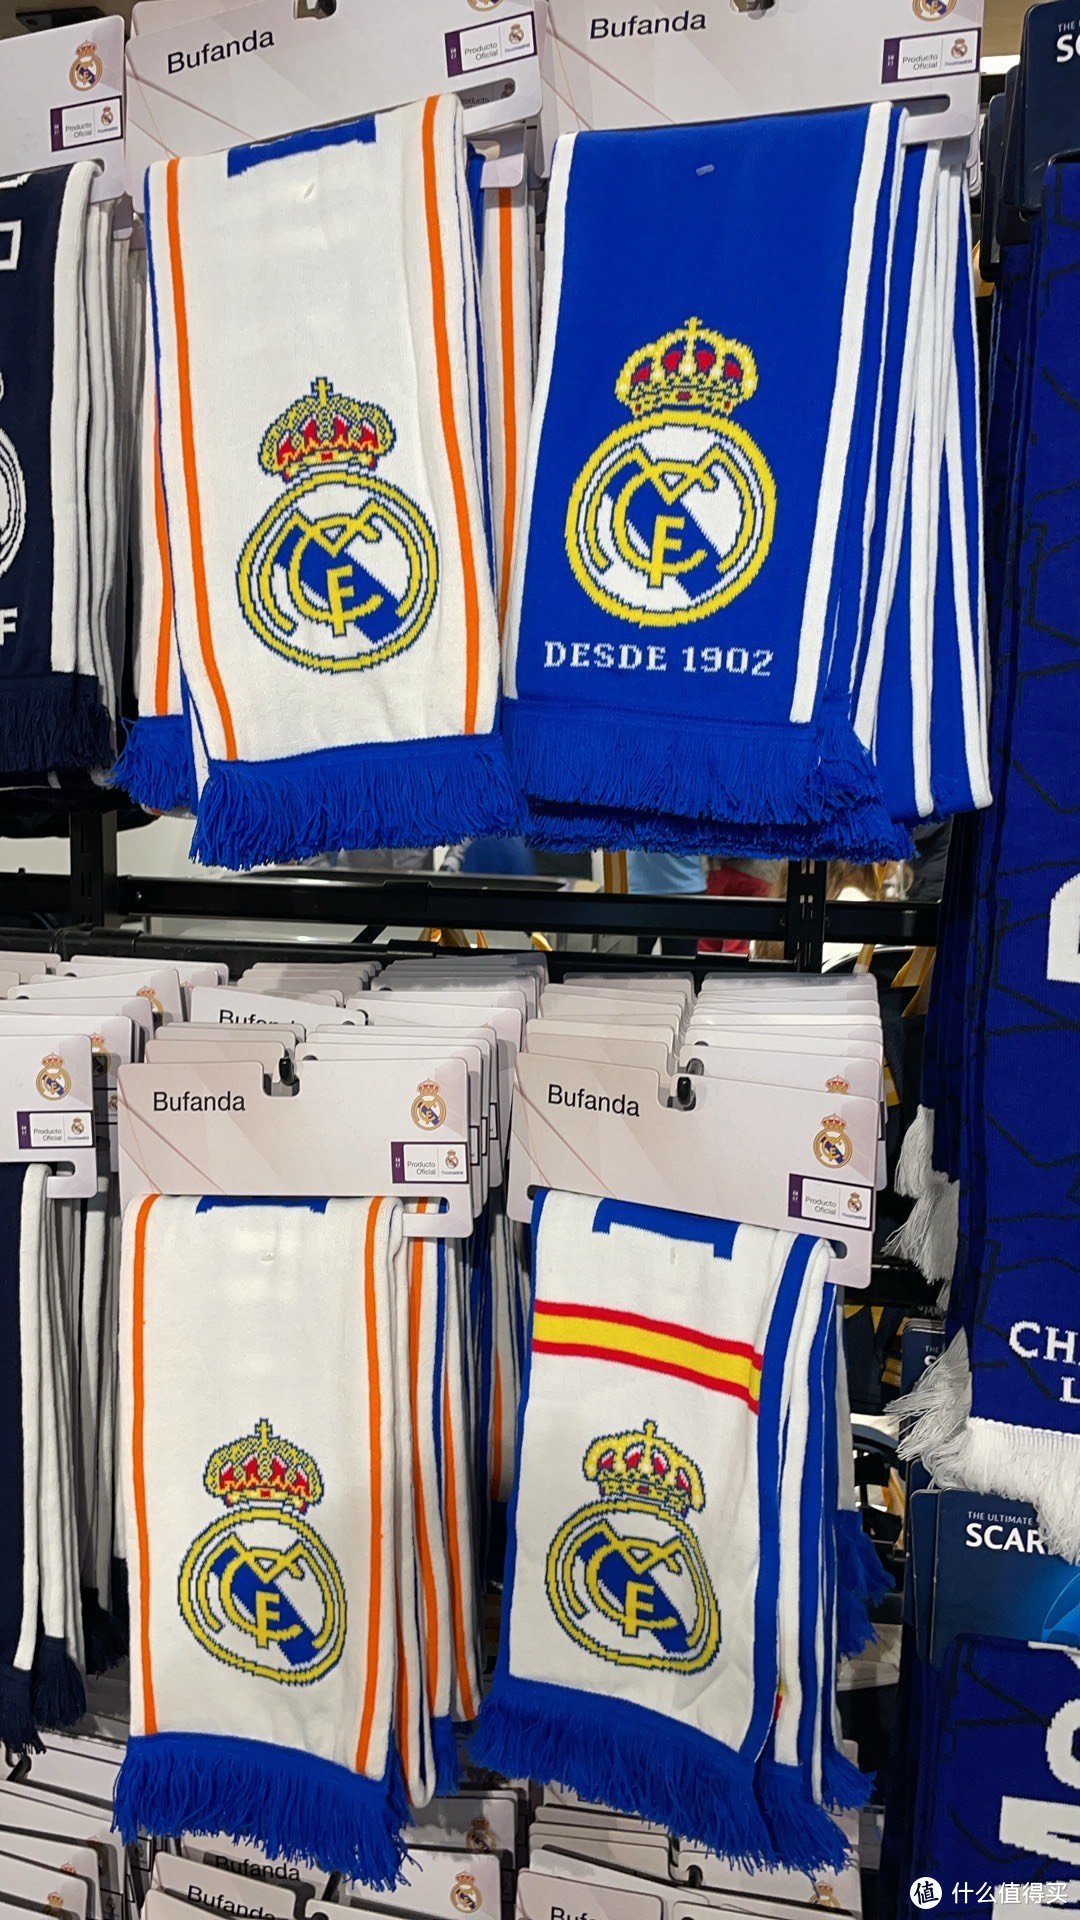 我在欧洲浪啊浪 之 皇家马德里主场买球衣